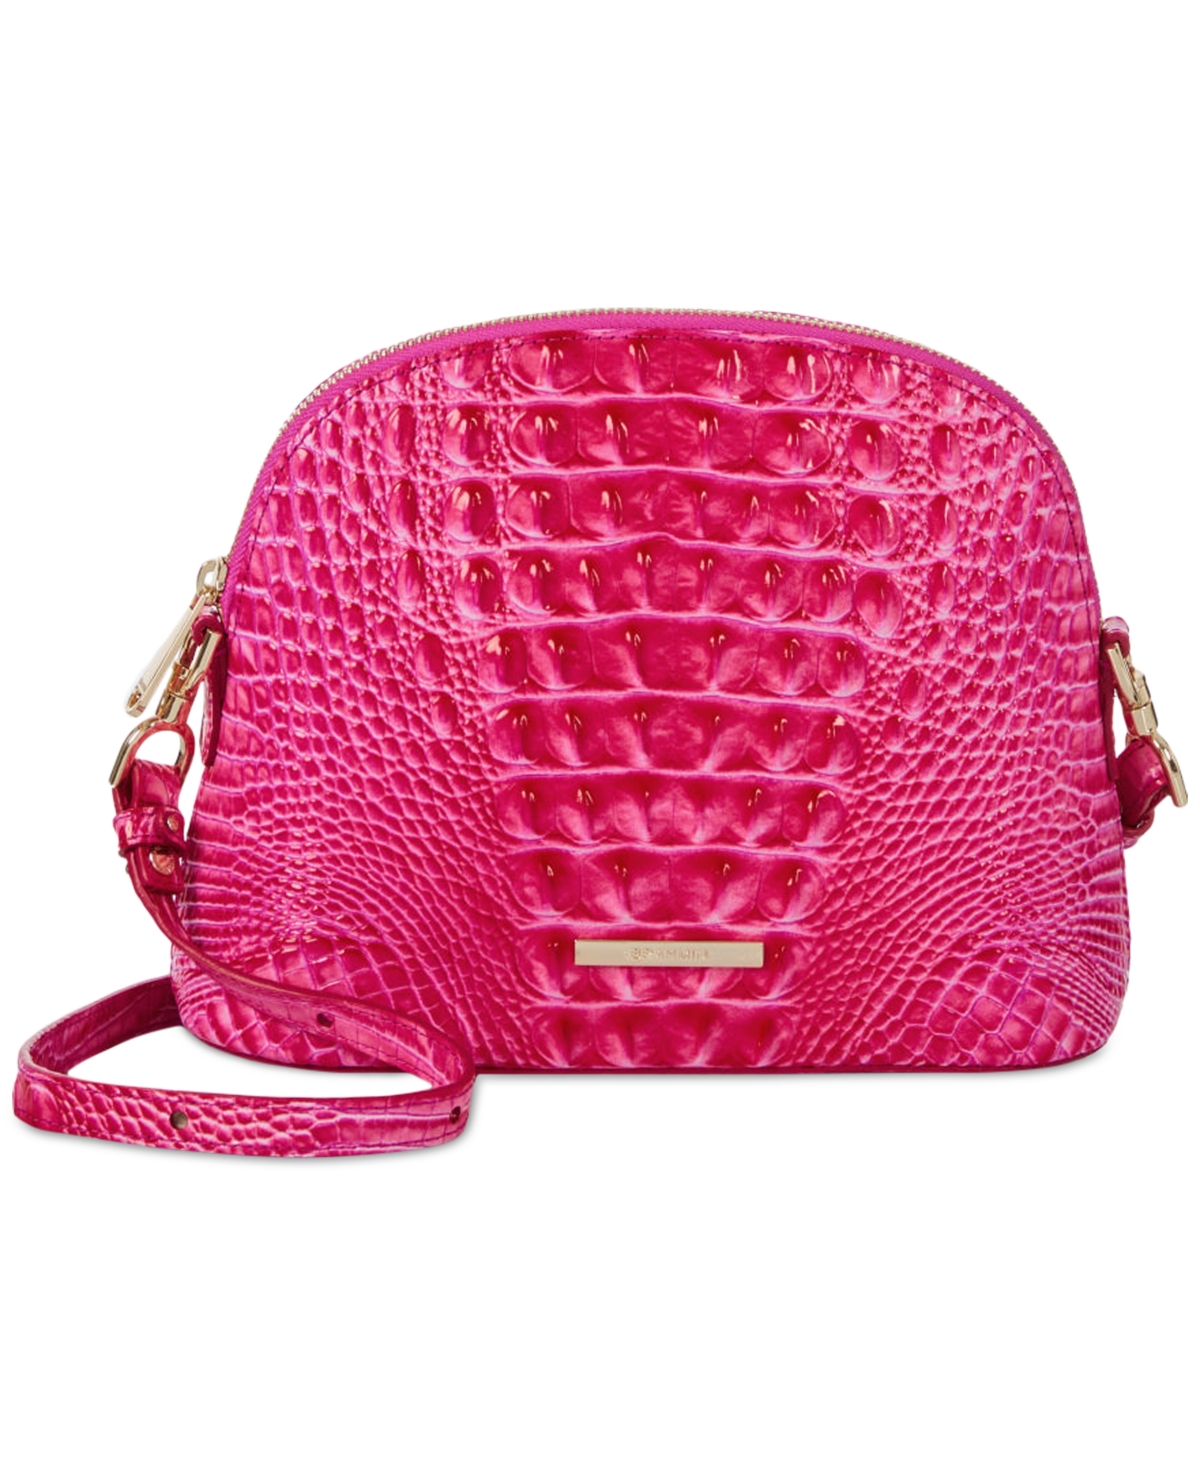 Brahmin pink bag - Gem